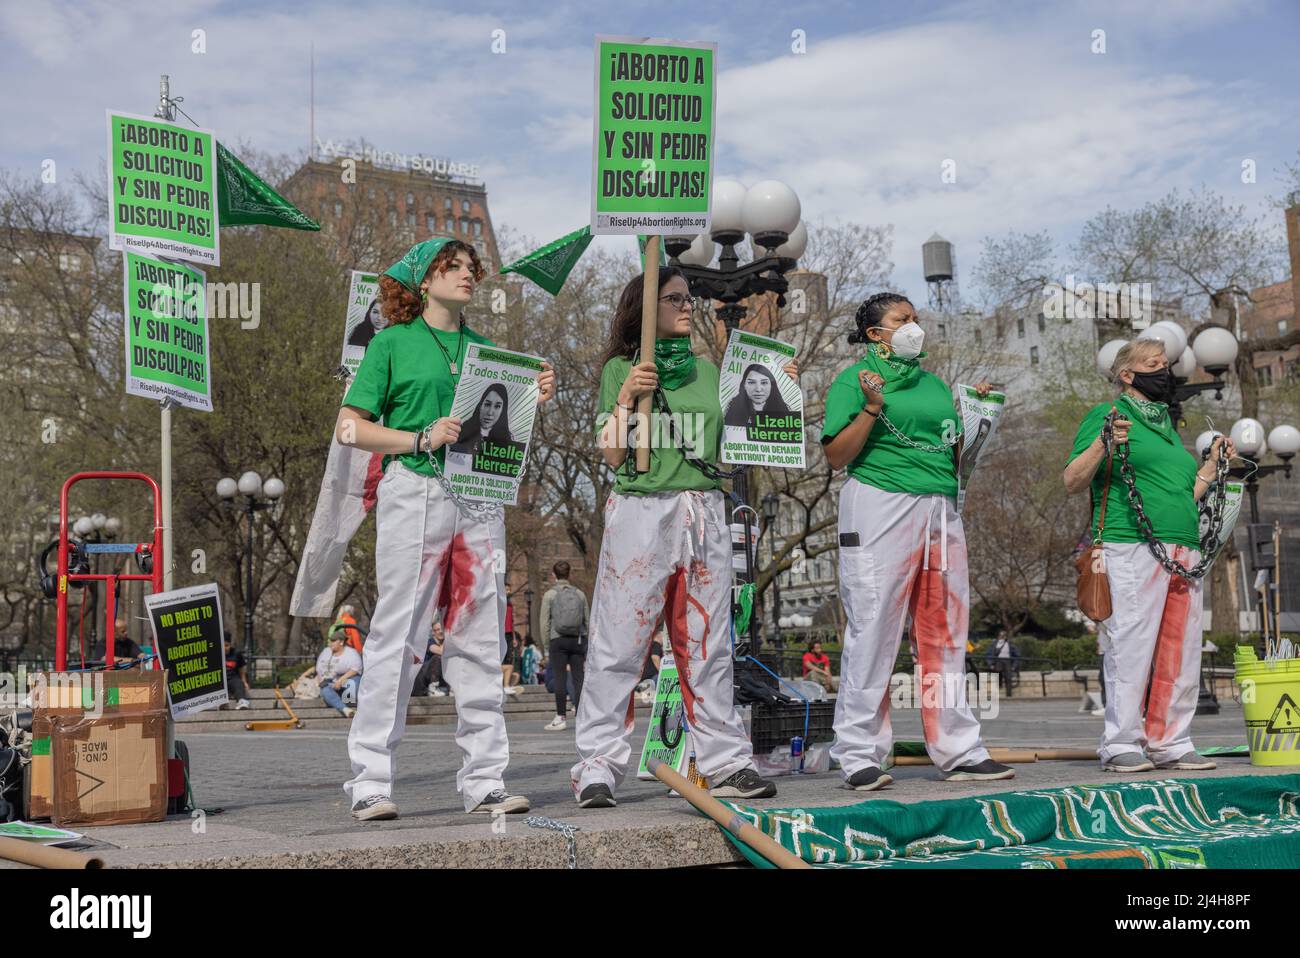 NUEVA YORK, N.Y. – 14 de abril de 2022: Manifestantes en Union Square protestan por el arresto de Lizelle Herrera y nuevas medidas estatales para restringir el aborto. Foto de stock